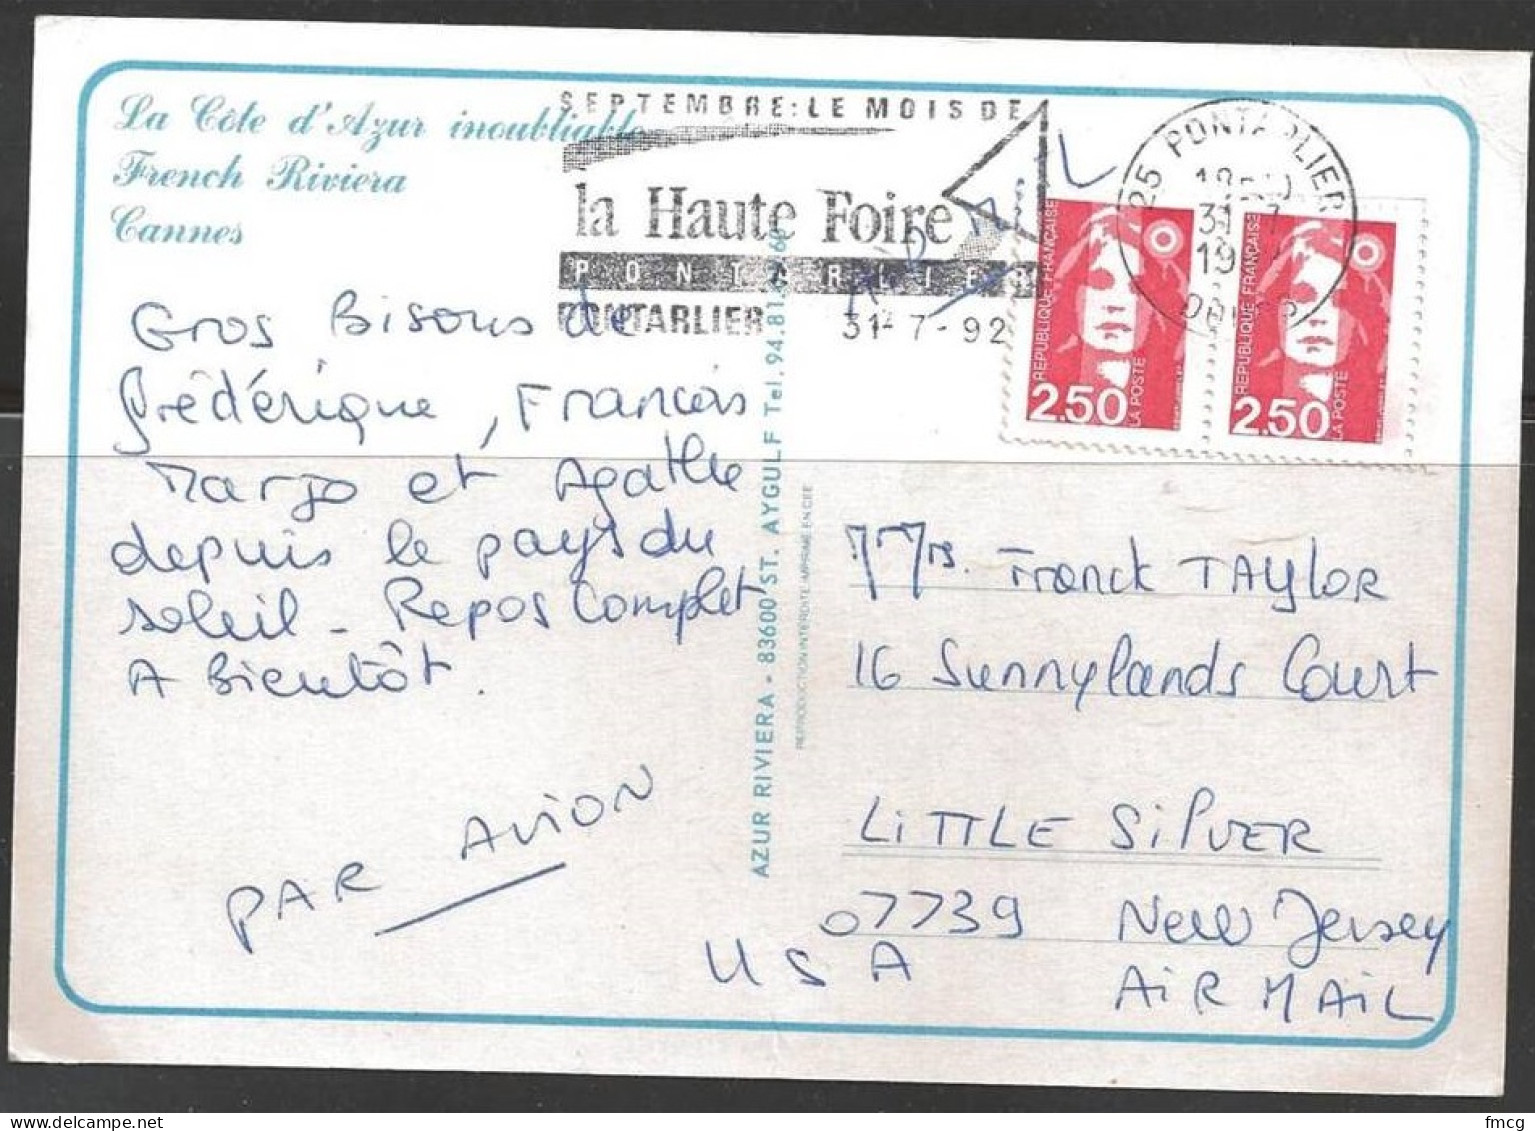 1992 Two 2.50,  Fancy La Haute Foire Pontarlier (31-7-92) On Pc - Covers & Documents